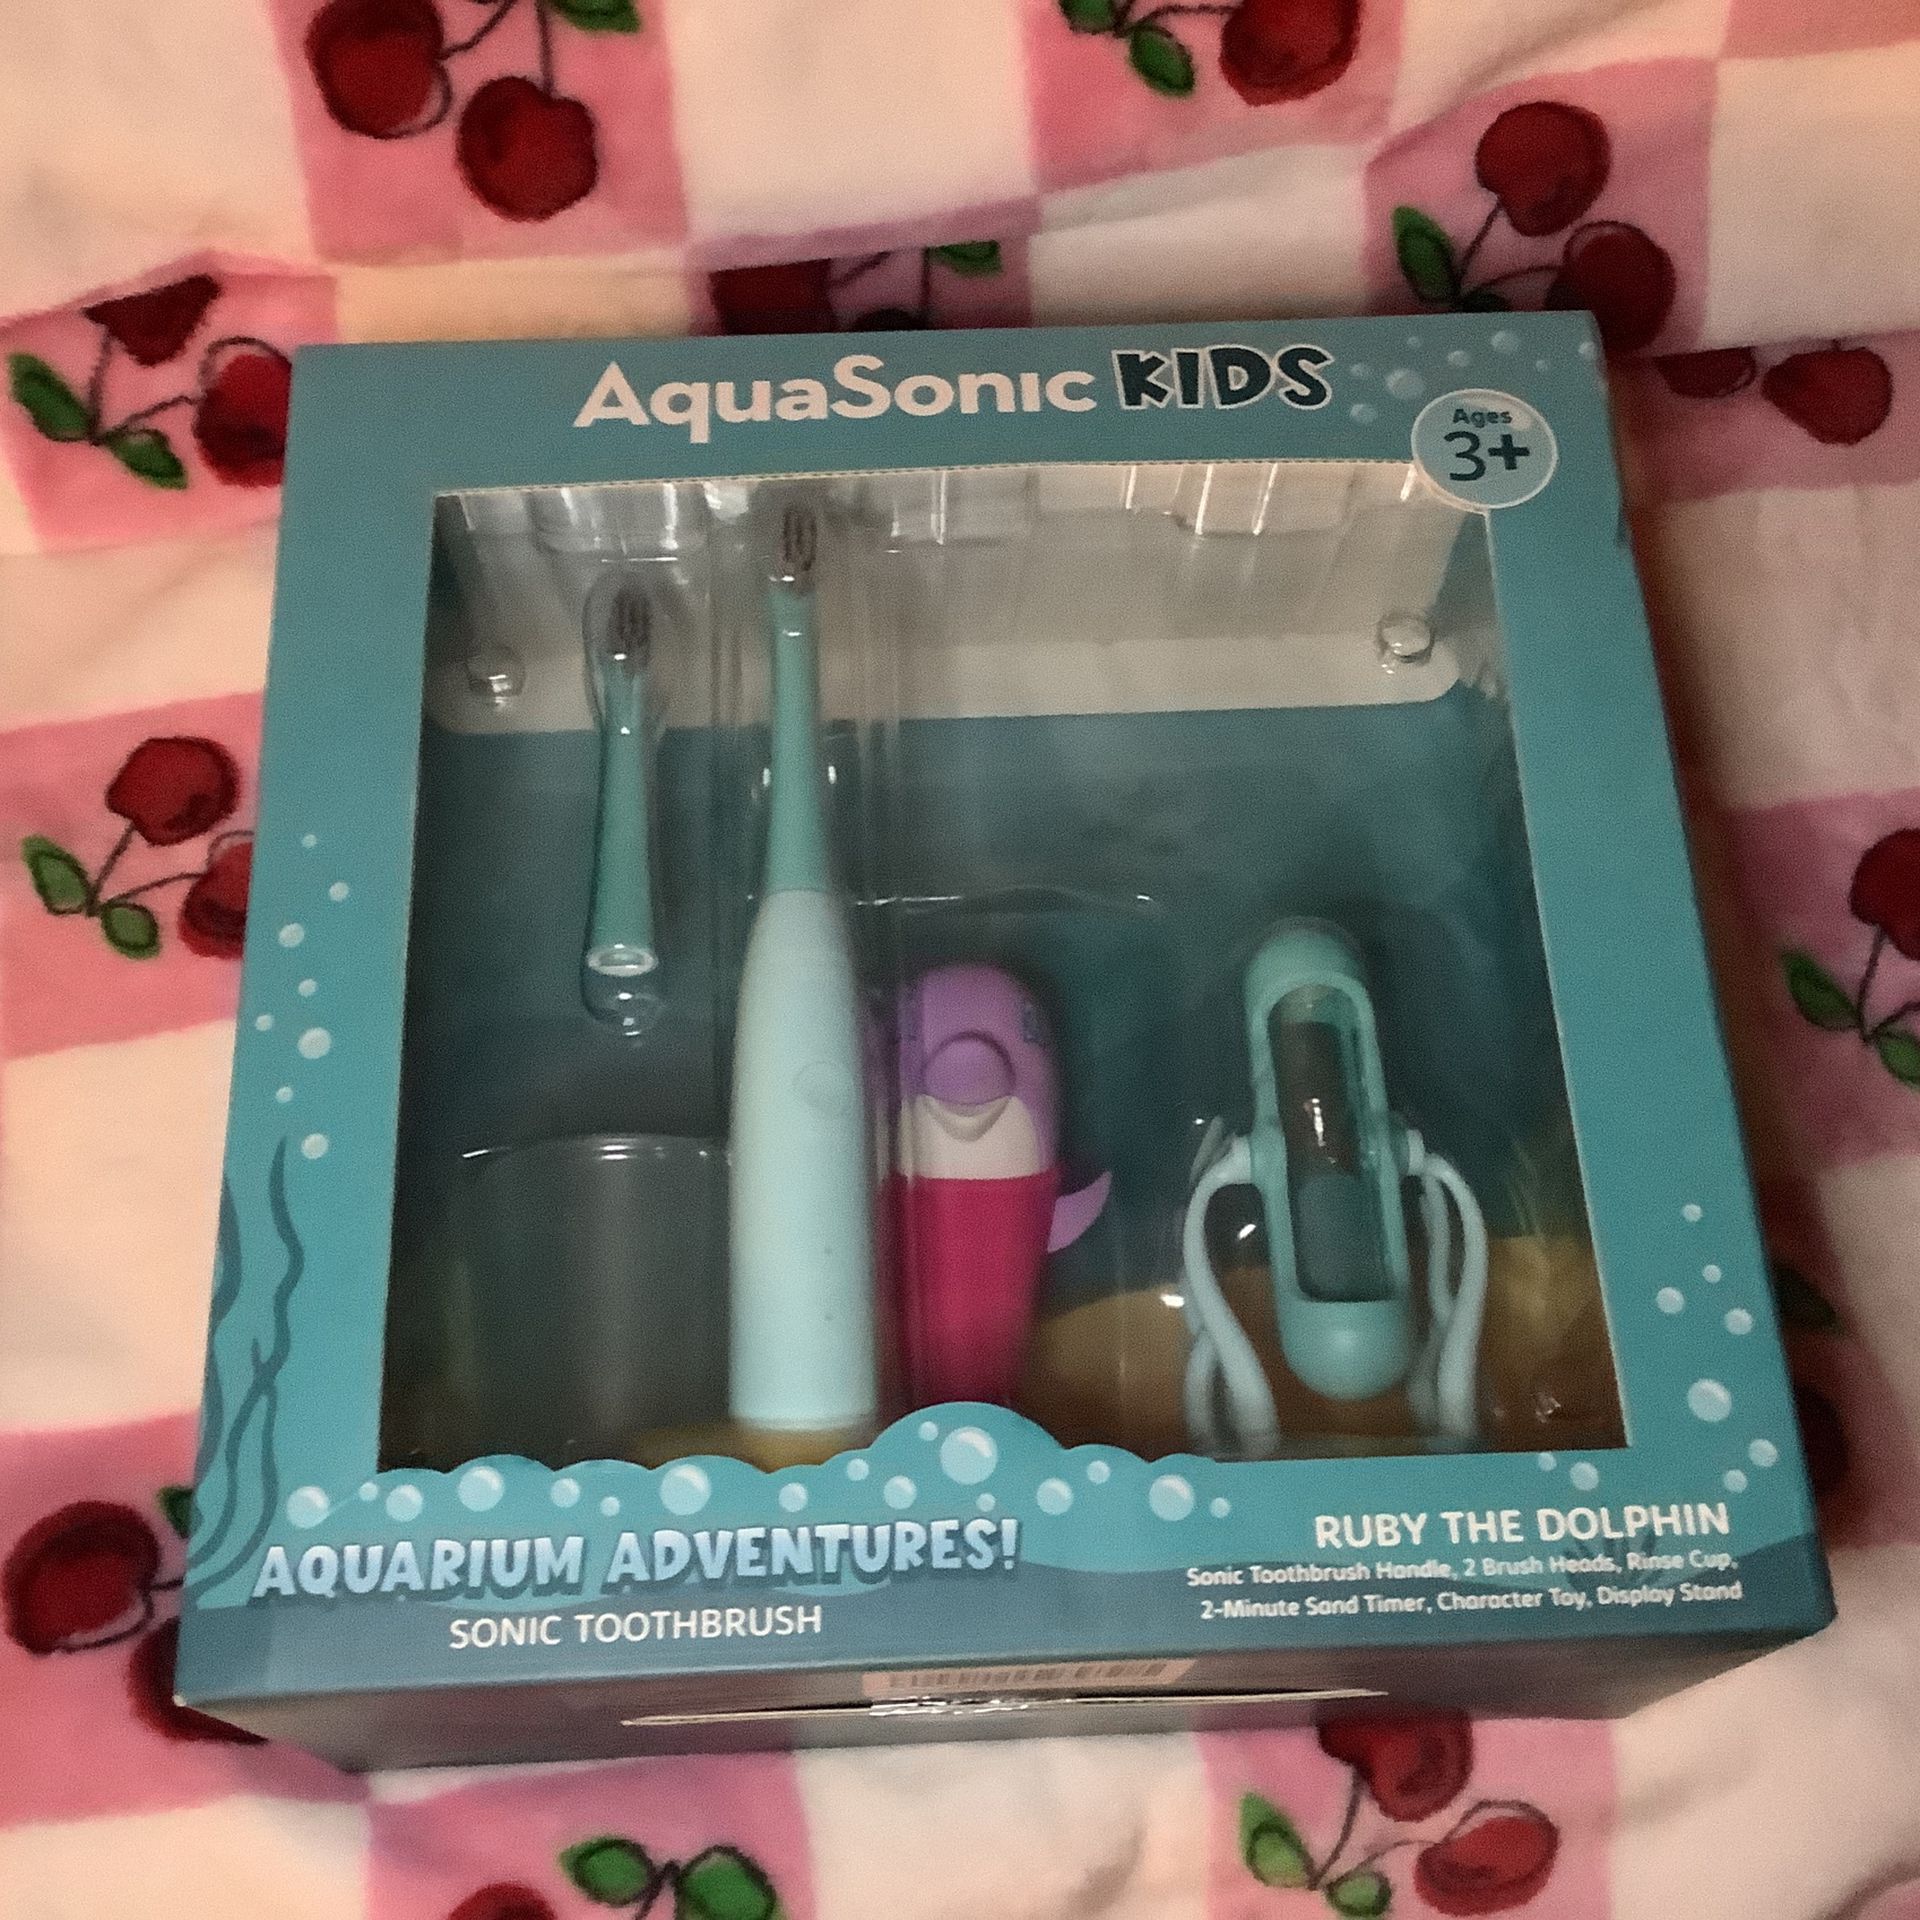 Aqua sonic Kids Aquarium Adventures Sonic Toothbrush 